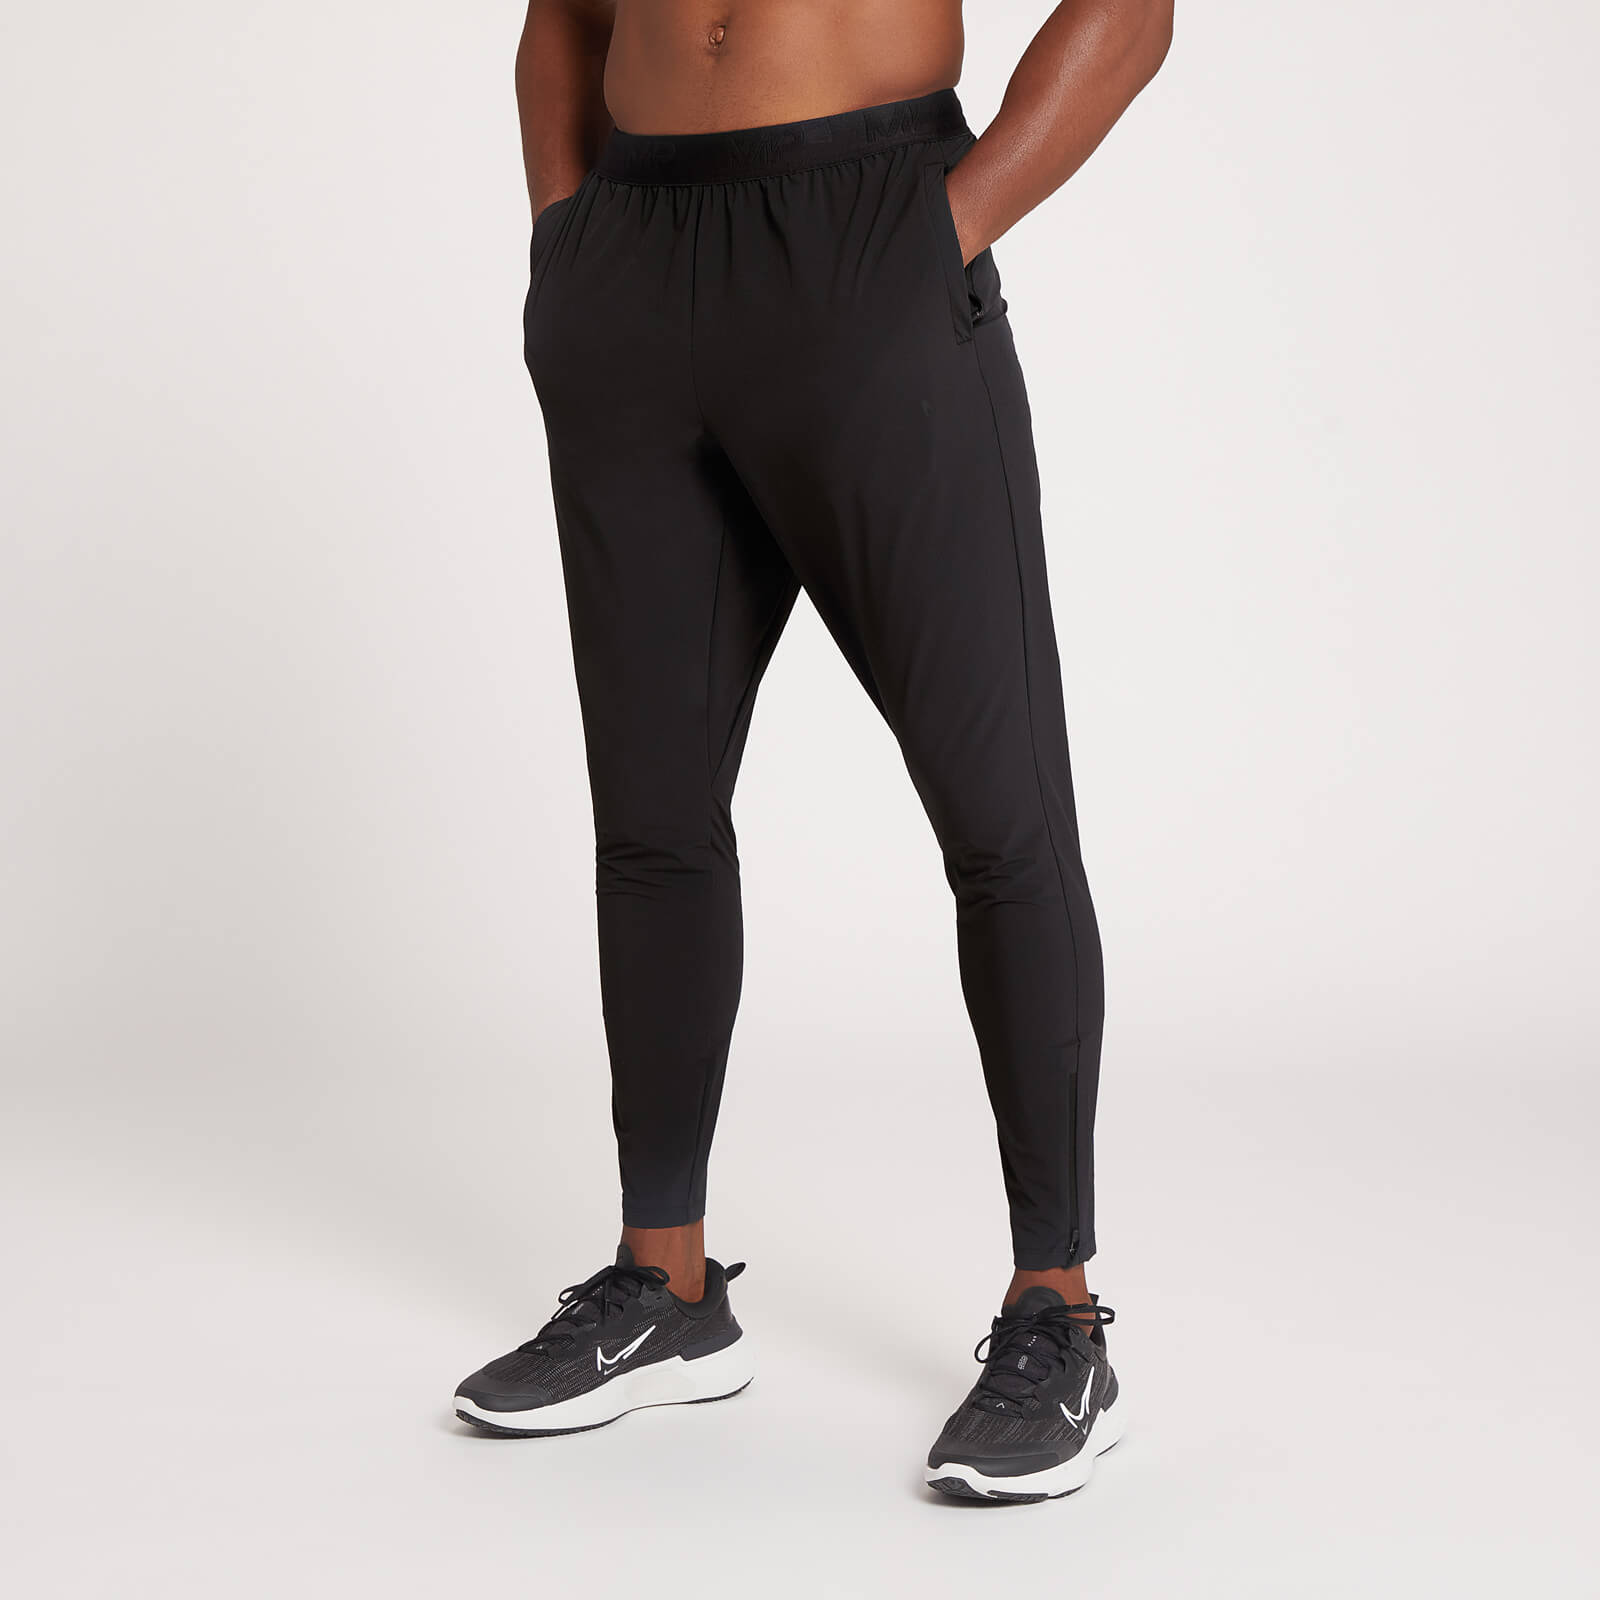 Jogging coupe slim MP Dynamic Training pour hommes – Noir - XL